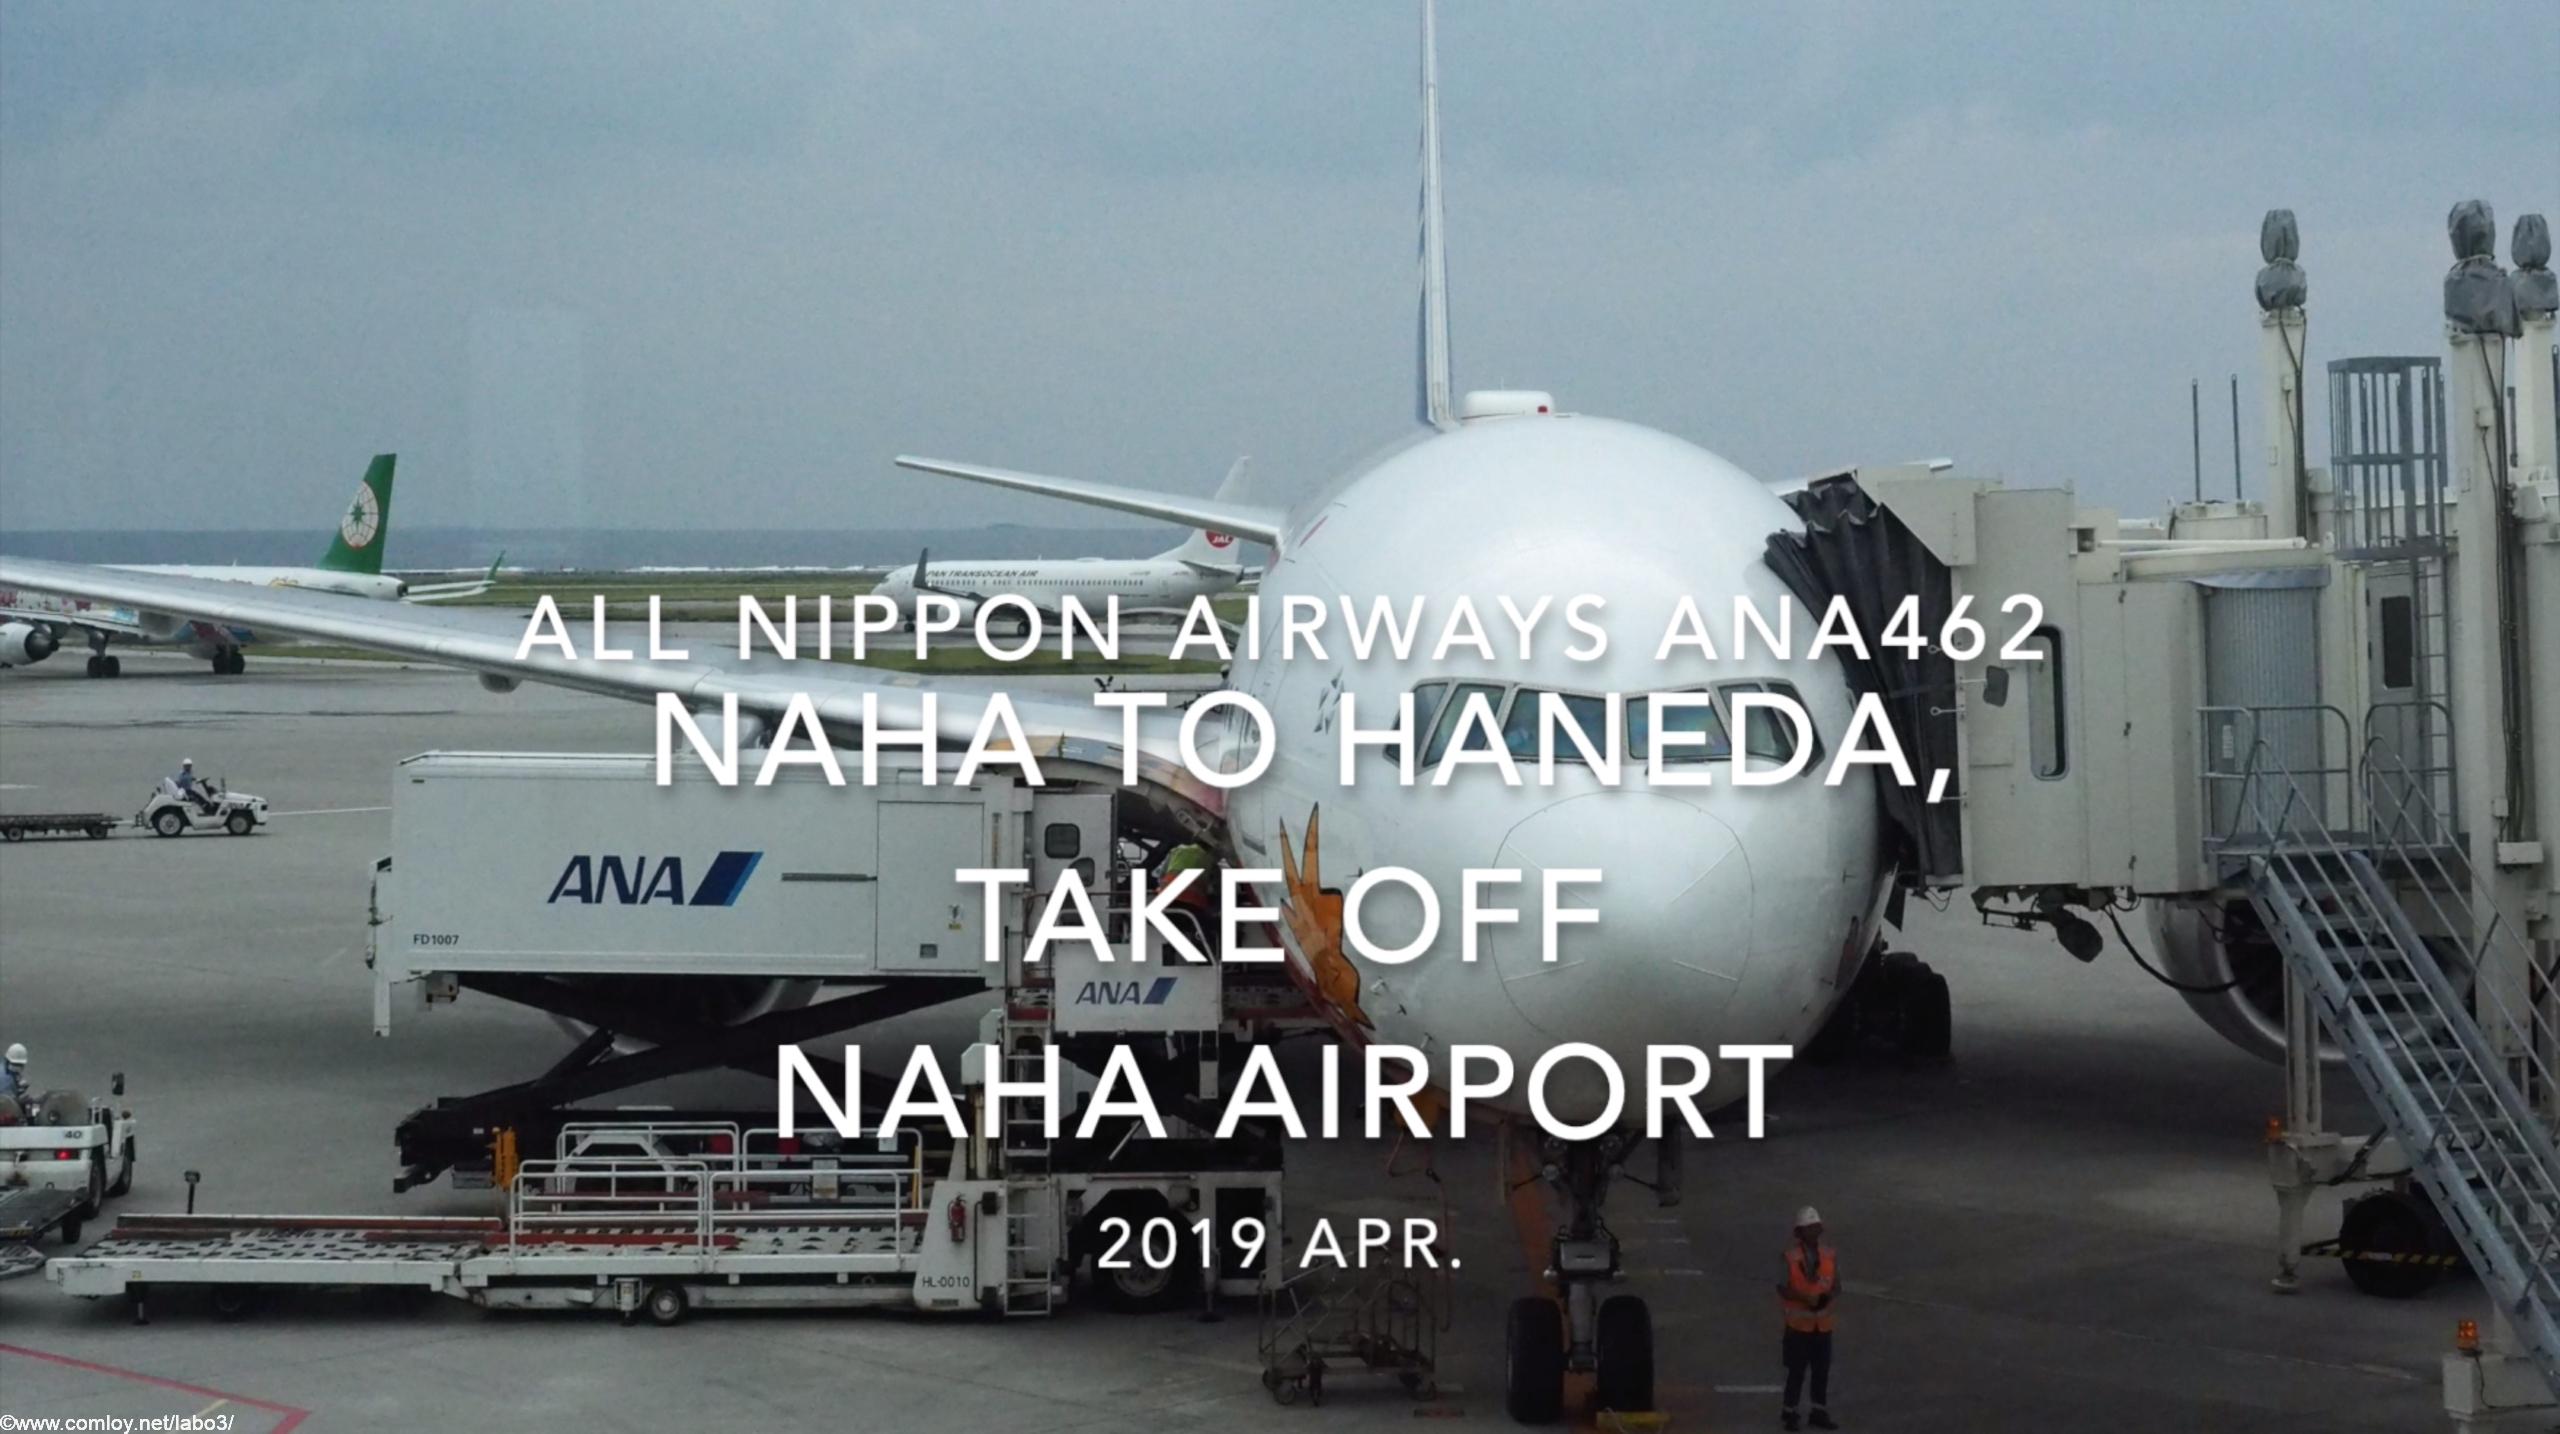 【機内から離着陸映像】2019 Apr All Nippon Airways ANA462 NAHA to HANEDA, Take off NAHA Airport